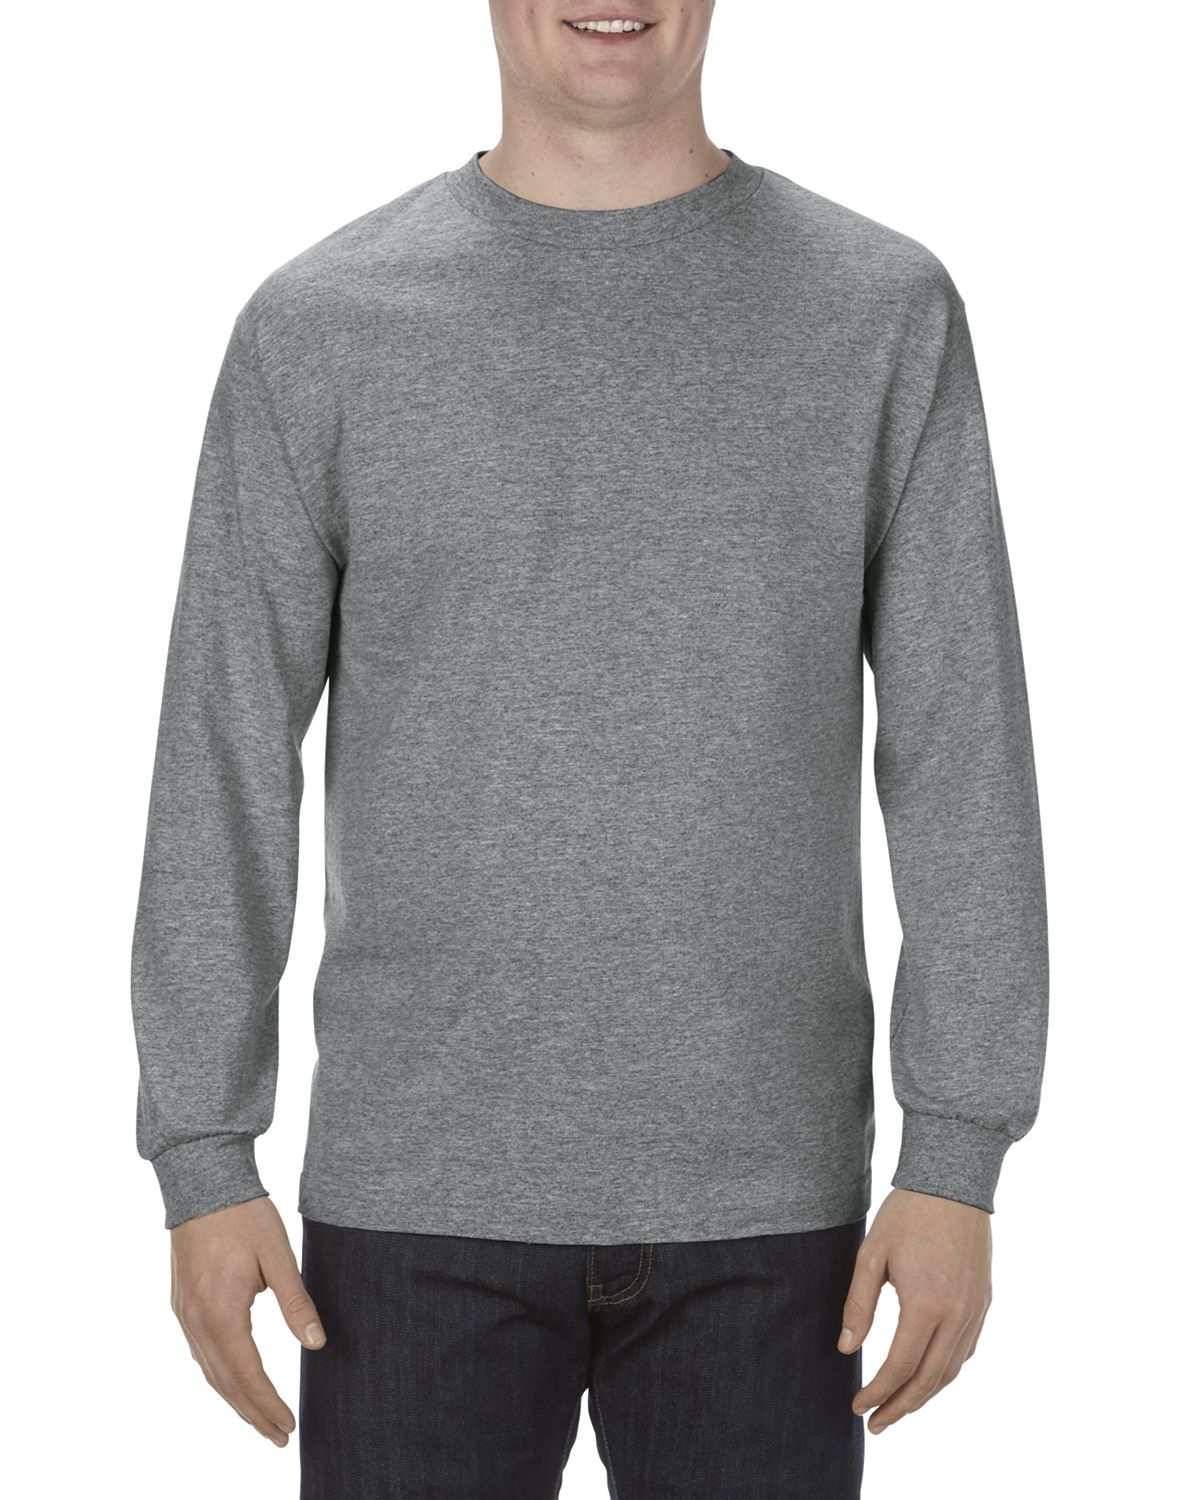 Alstyle AL1904 Men's 5.1 oz.; 100% Soft Spun Cotton Long-Sleeve T-Shirt